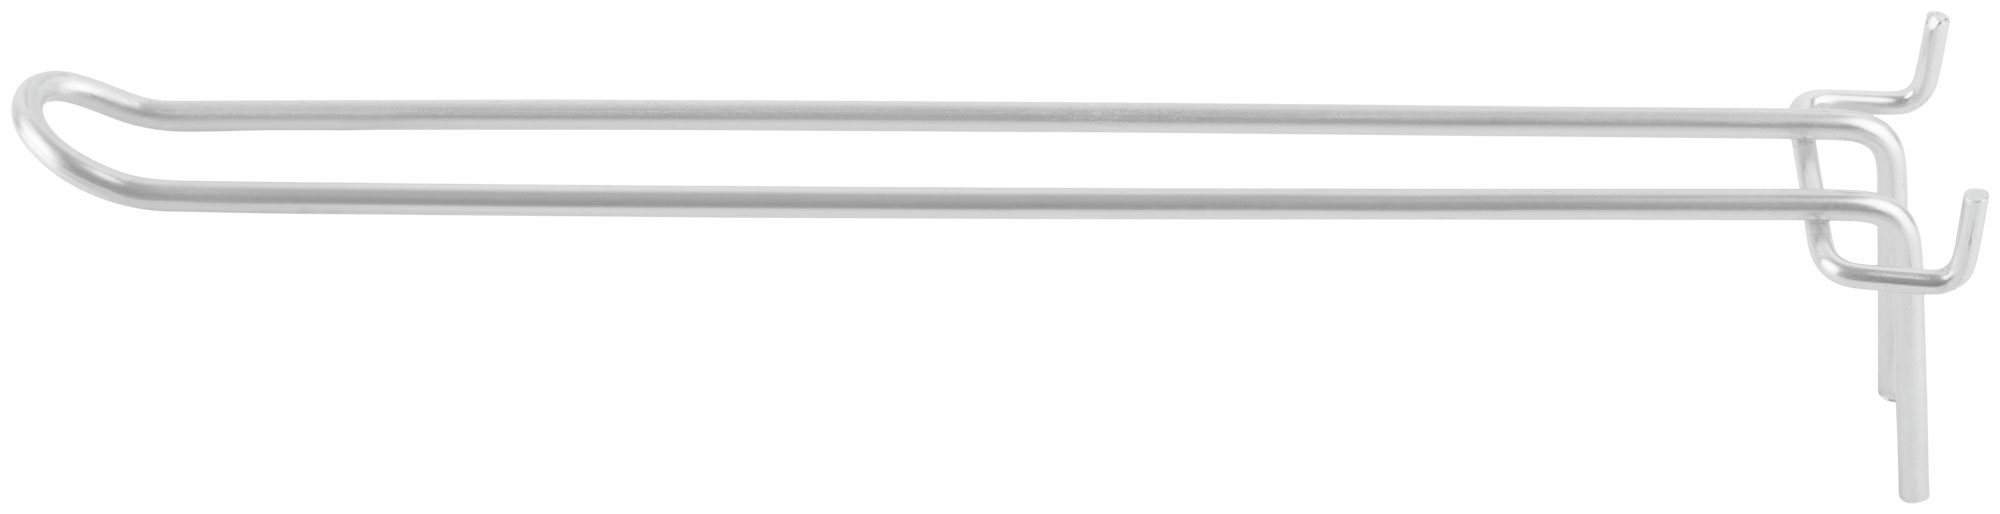 Крюк для стенда двойной оцинкованный 300 мм